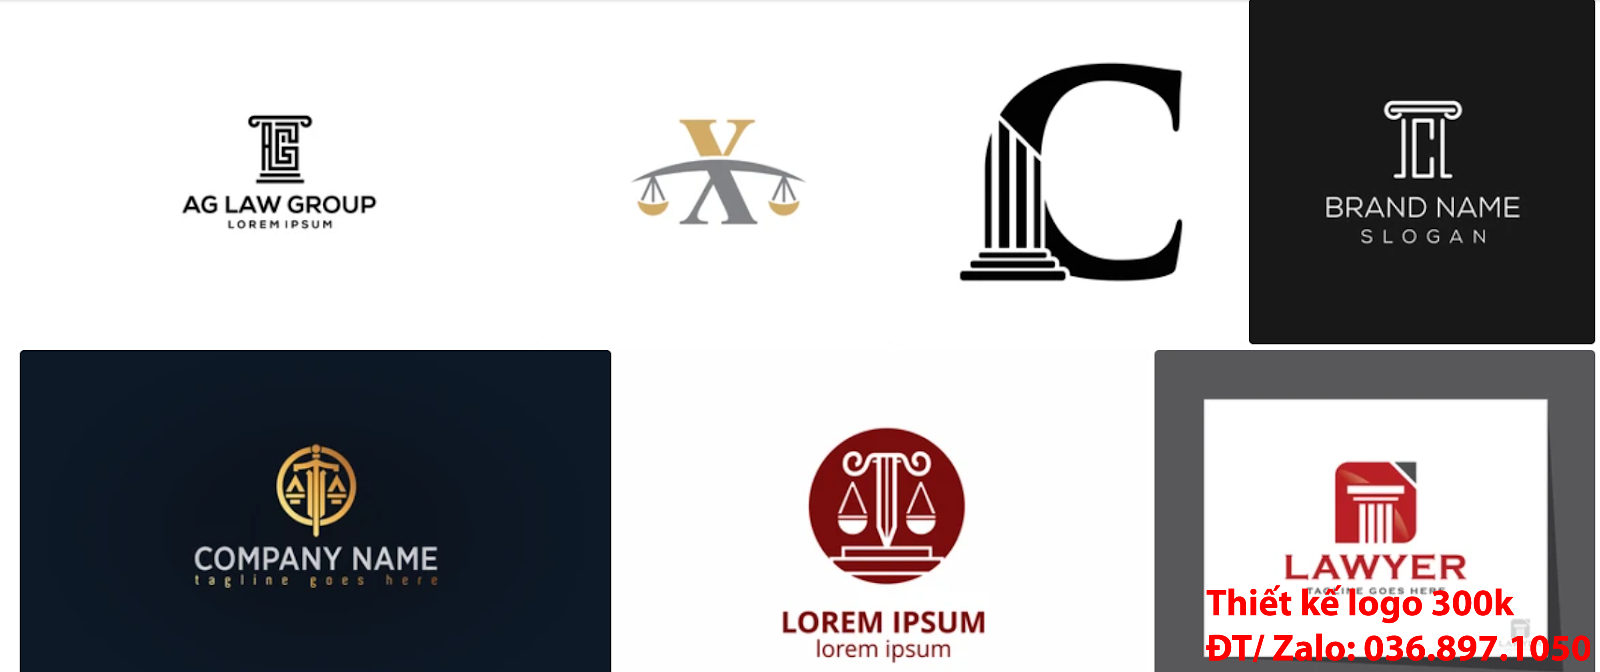 Mẫu Hình ảnh Logo công ty luật sư PNG và Vector đẹp giá rẻ chất lượng cao 500k